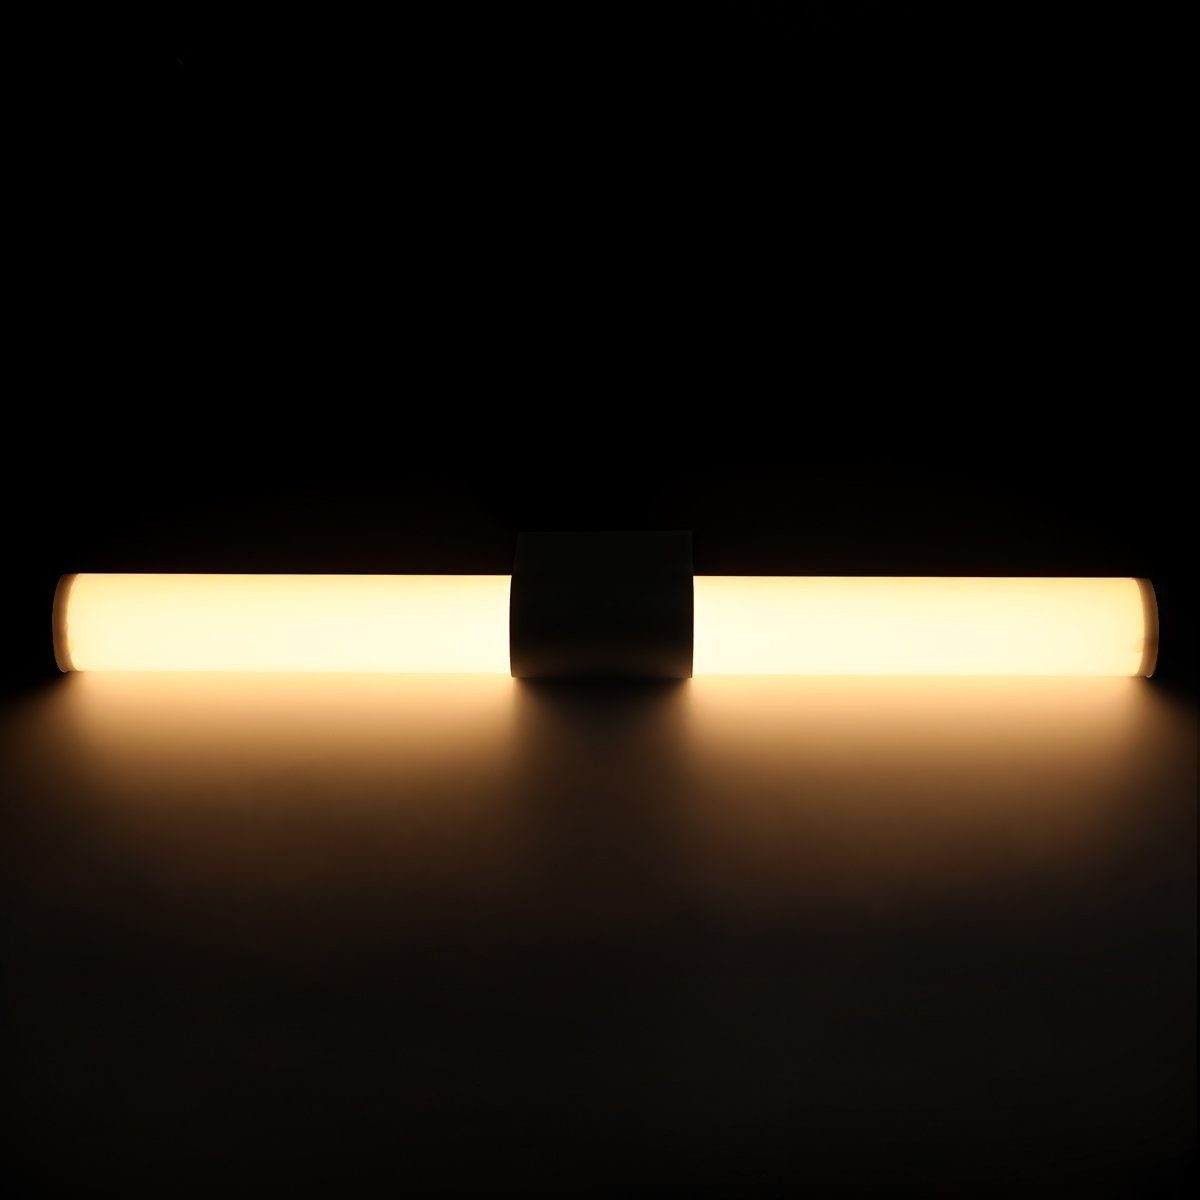 LETGOSPT Spiegelleuchte LED Badezimmer Kalteweiß, Make-up integriert, LED 55CM LED Aufbaulampe Beleuchtung Warmweiß, fest Licht Bad Spiegel-Leuchte Wandleuchte, Ständer Wand Aufbau-Lampe, Kommode